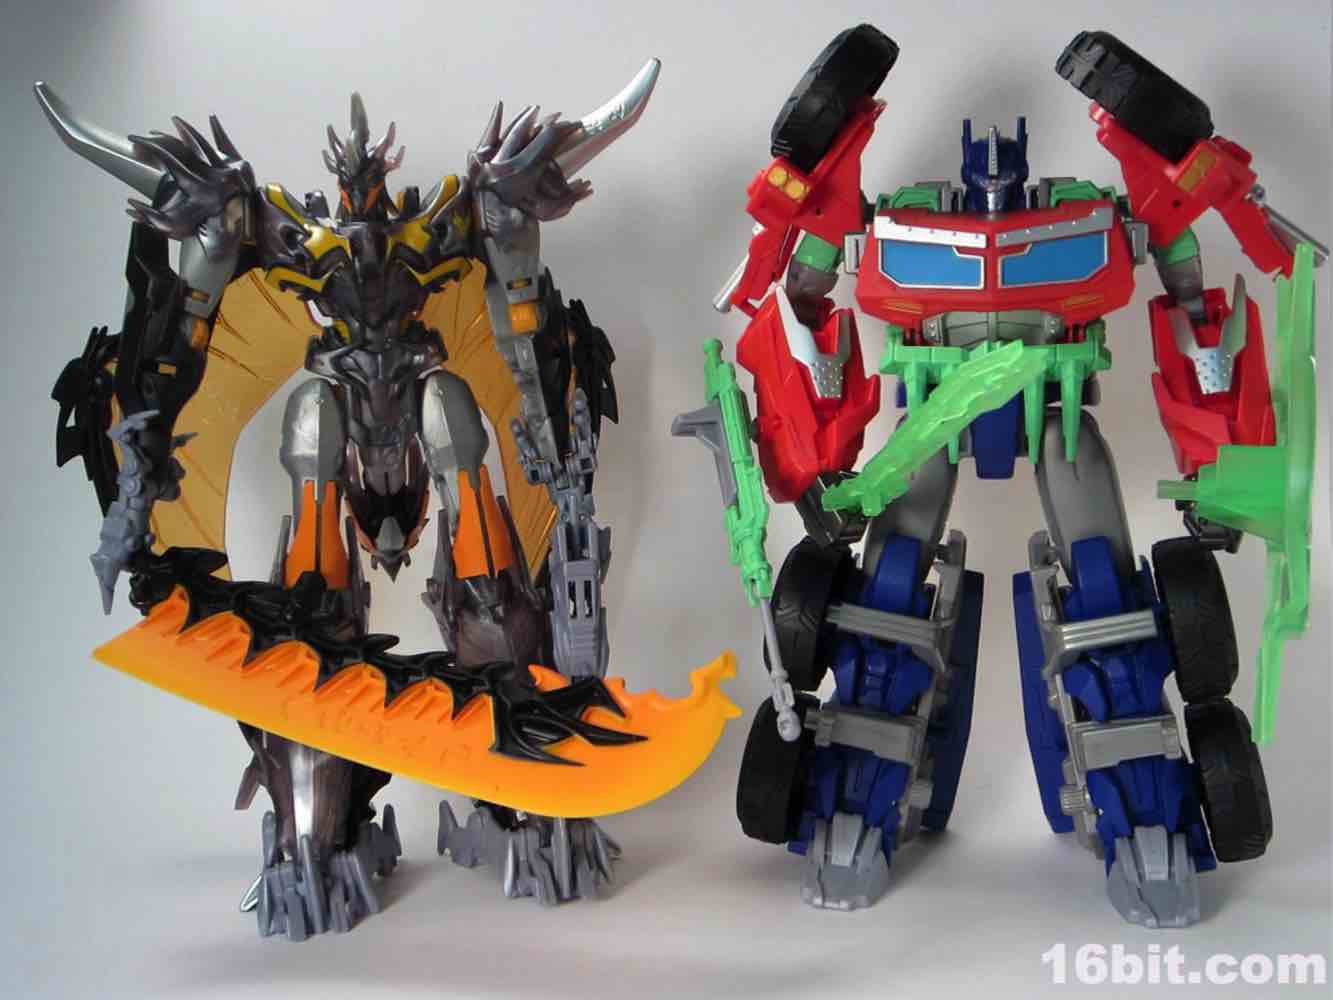 Transformers Beast Hunters Supreme Optimus Prime